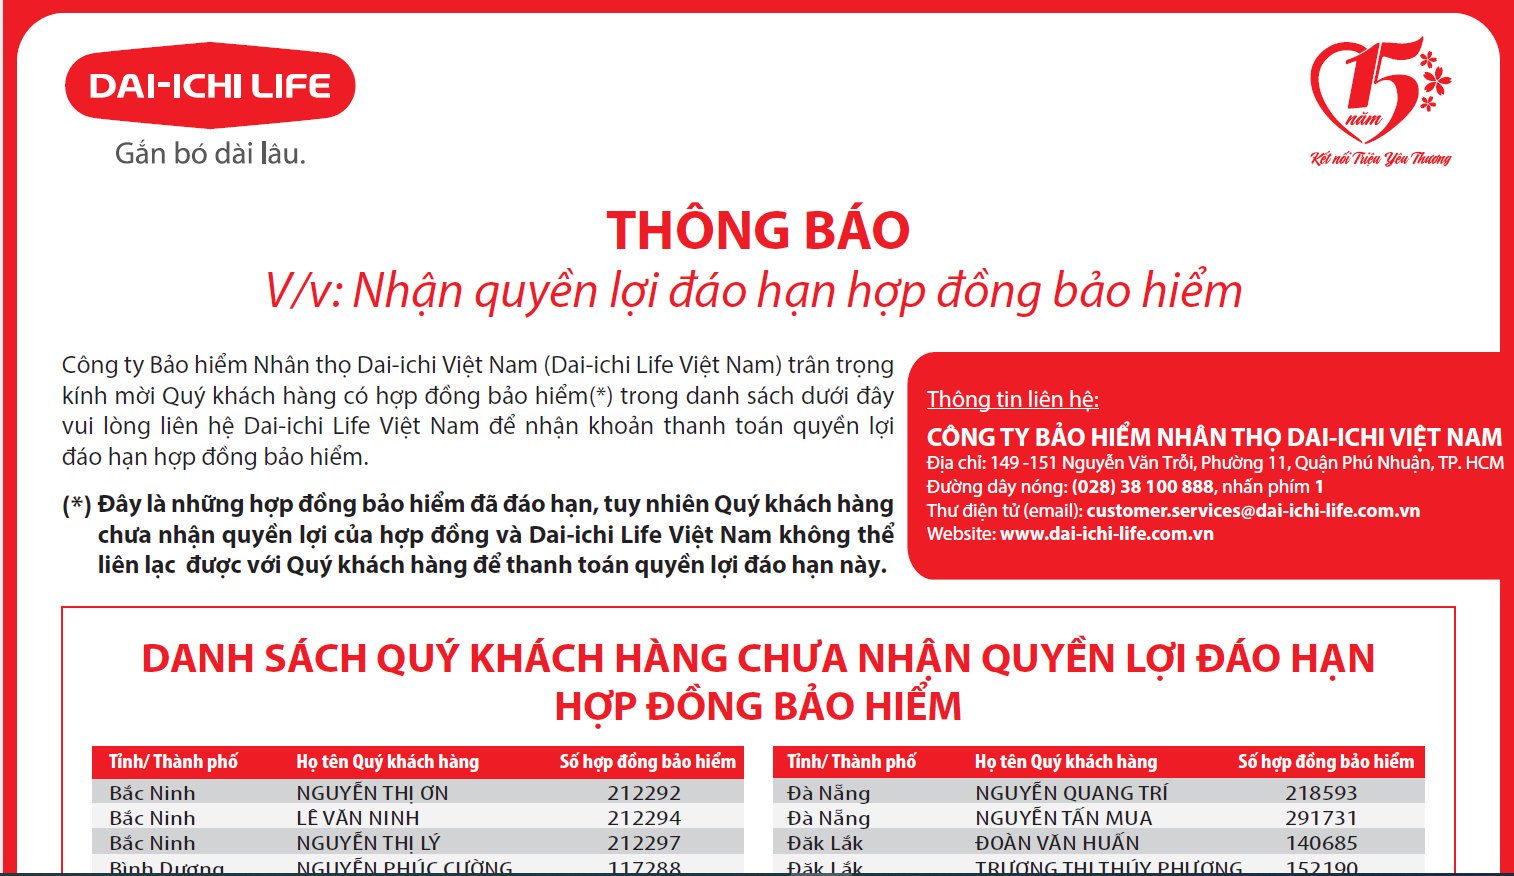 Dai-ichi Life Việt Nam thông báo nhận quyền lợi đáo hạn hợp đồng bảo hiểm...